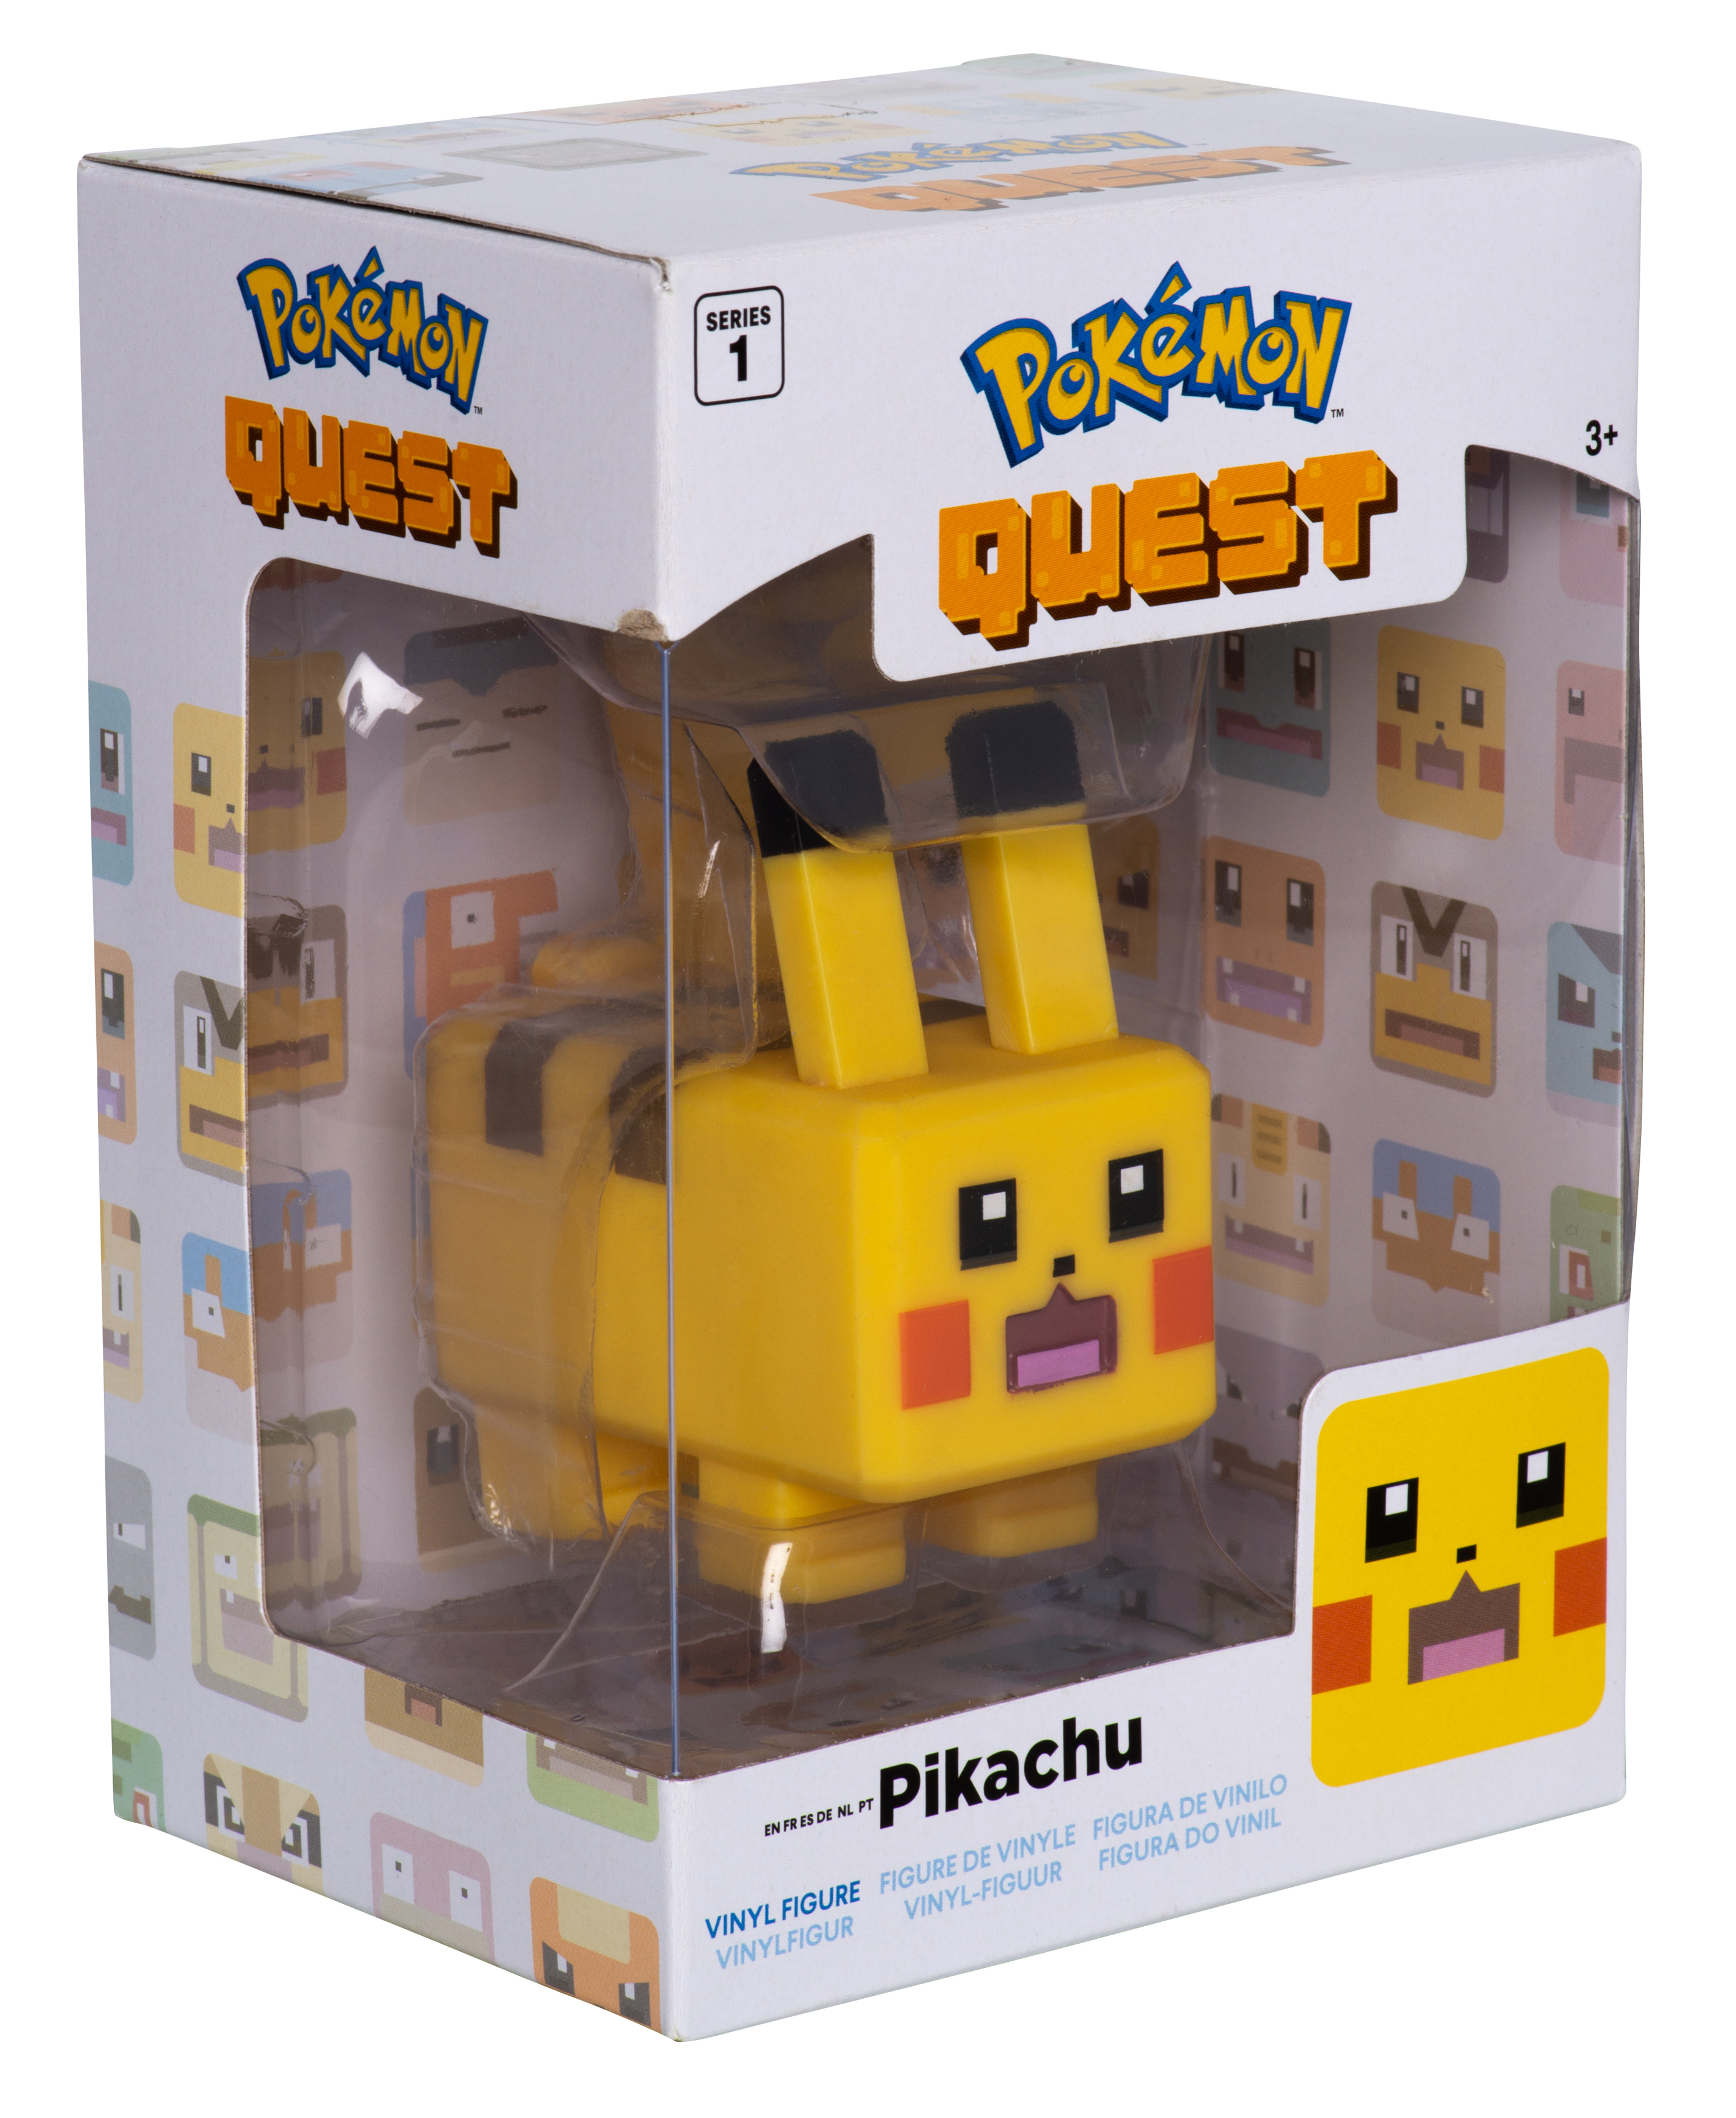 Pokémon cm Pikachu 8 Vinyl Figur Quest -